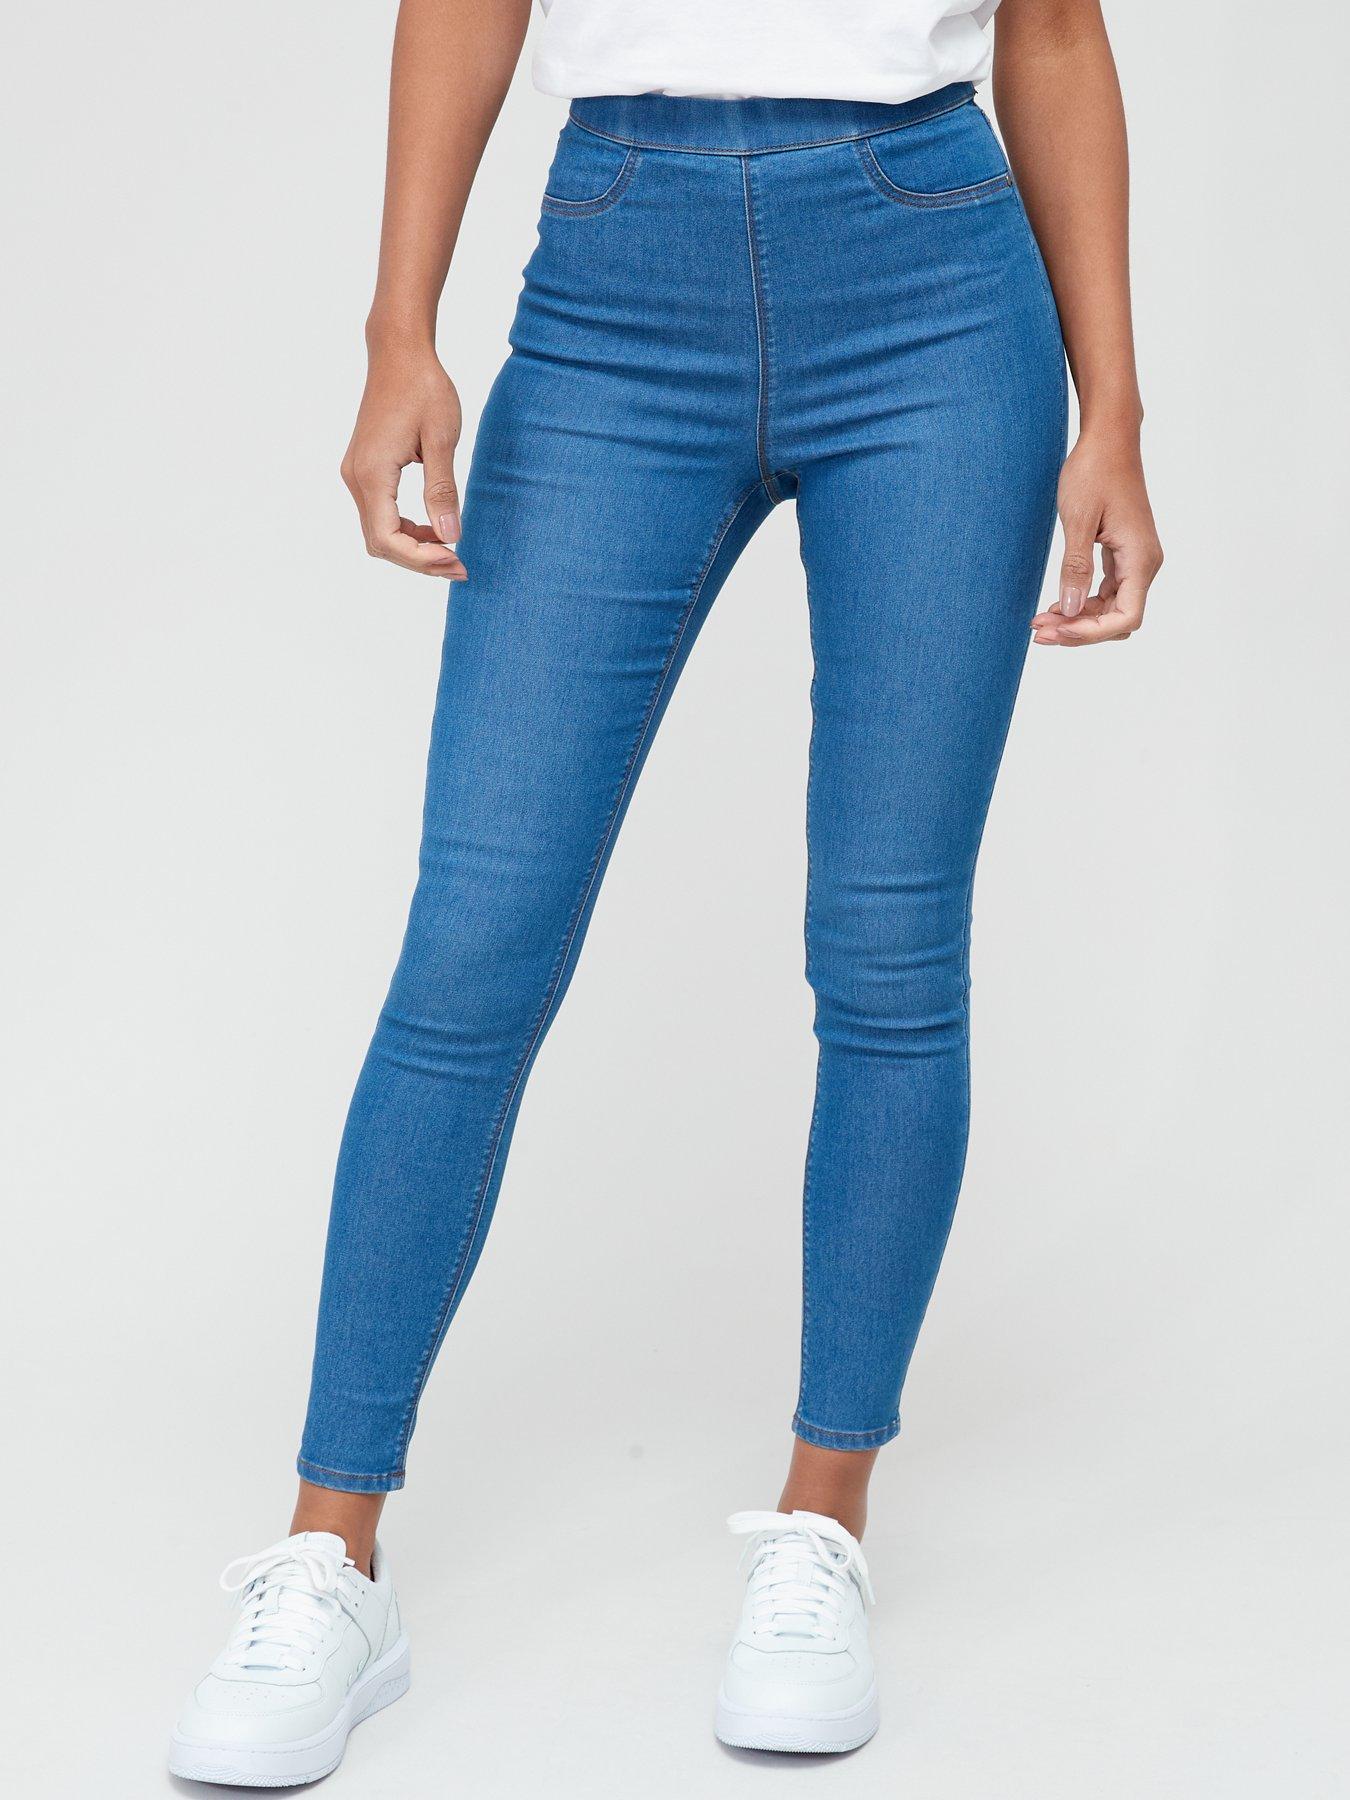 JOE'S JEANS Legging Ankle Zipper Stretch Skinny Jeans Jeggings Pants Blue  $92 | eBay